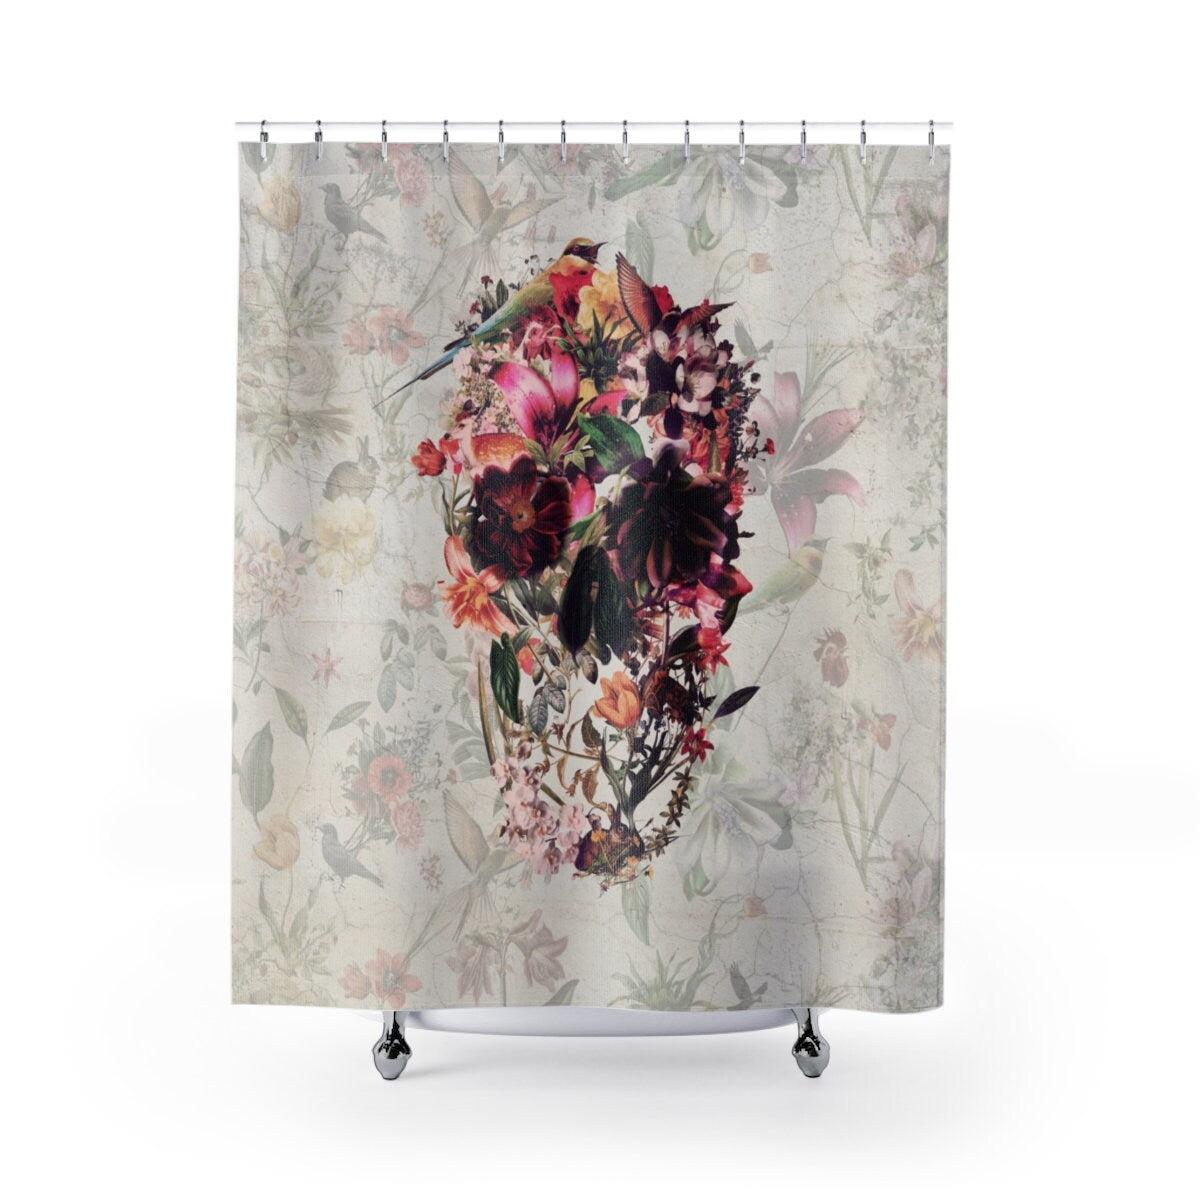 Skull Shower Curtain, Boho Skull Shower Curtain Decor, Floral Gothic Skull Shower Curtain Home Decor, Flower Sugar Skull Art Bathroom Decor